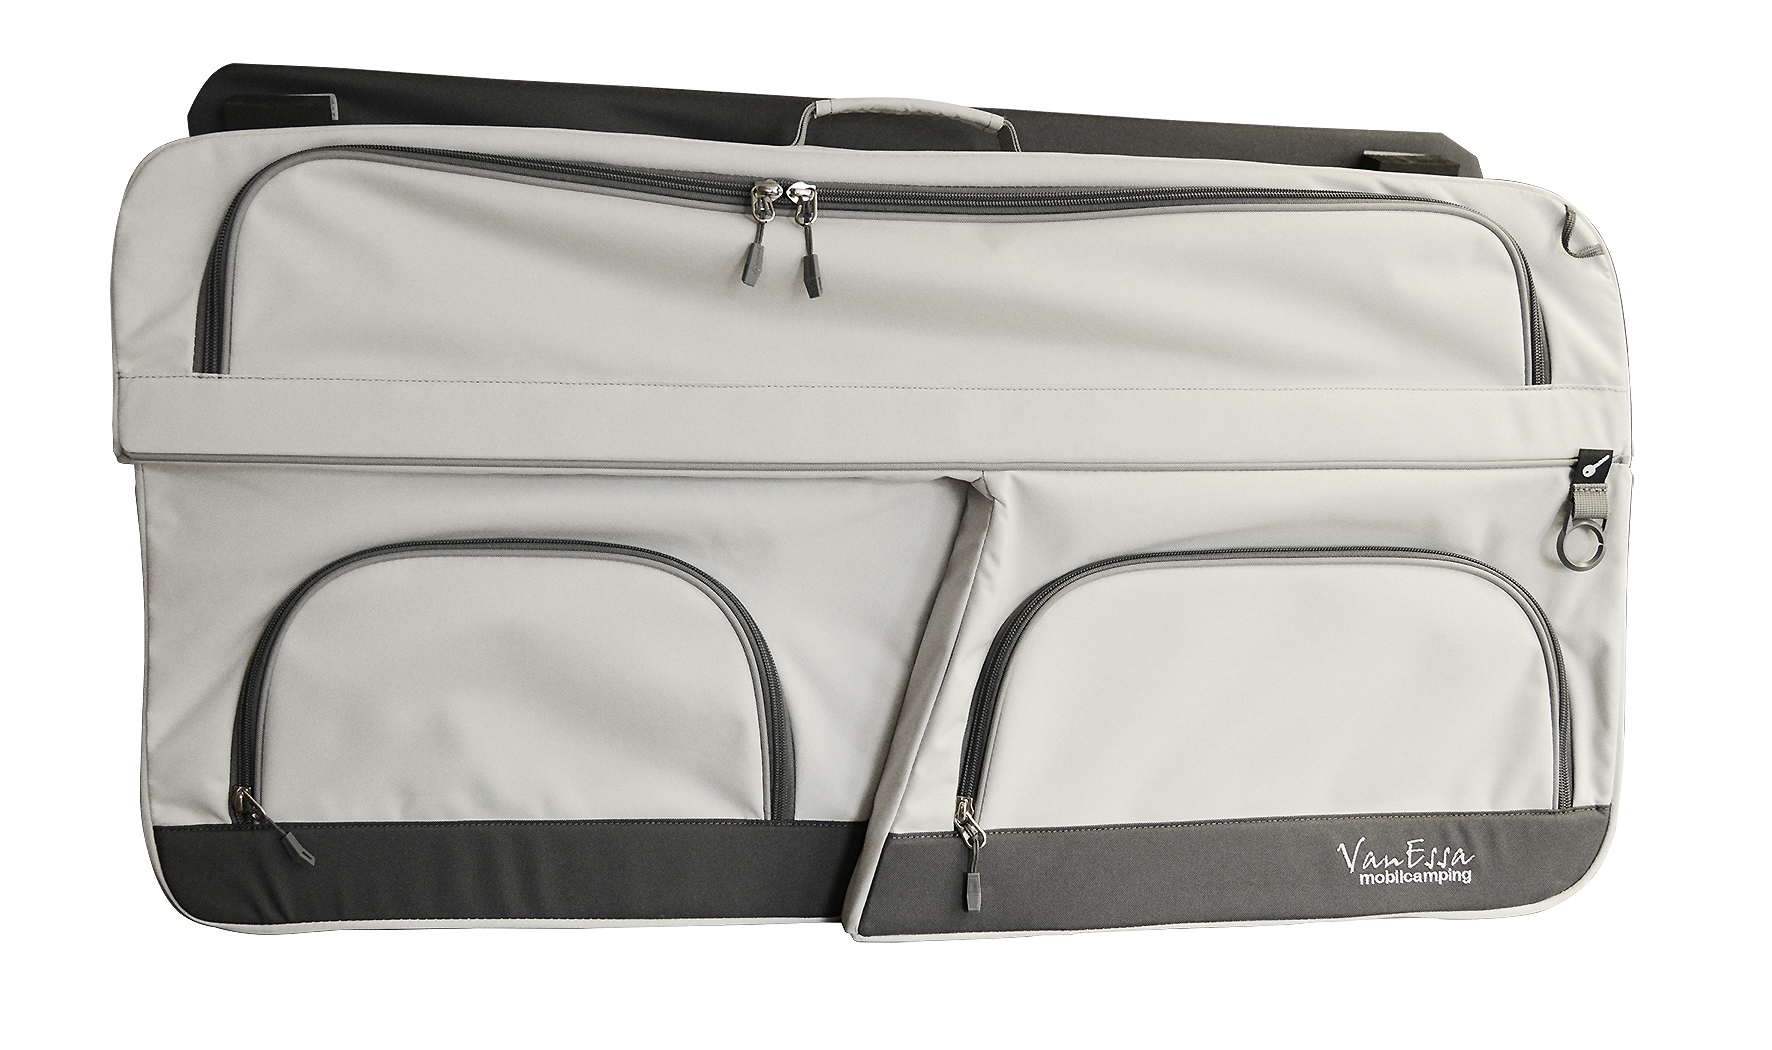 VanEssa Fenstertasche - unser optimal genutzter Stauraum - auch für T6.1  passend - VanEssa mobilcamping